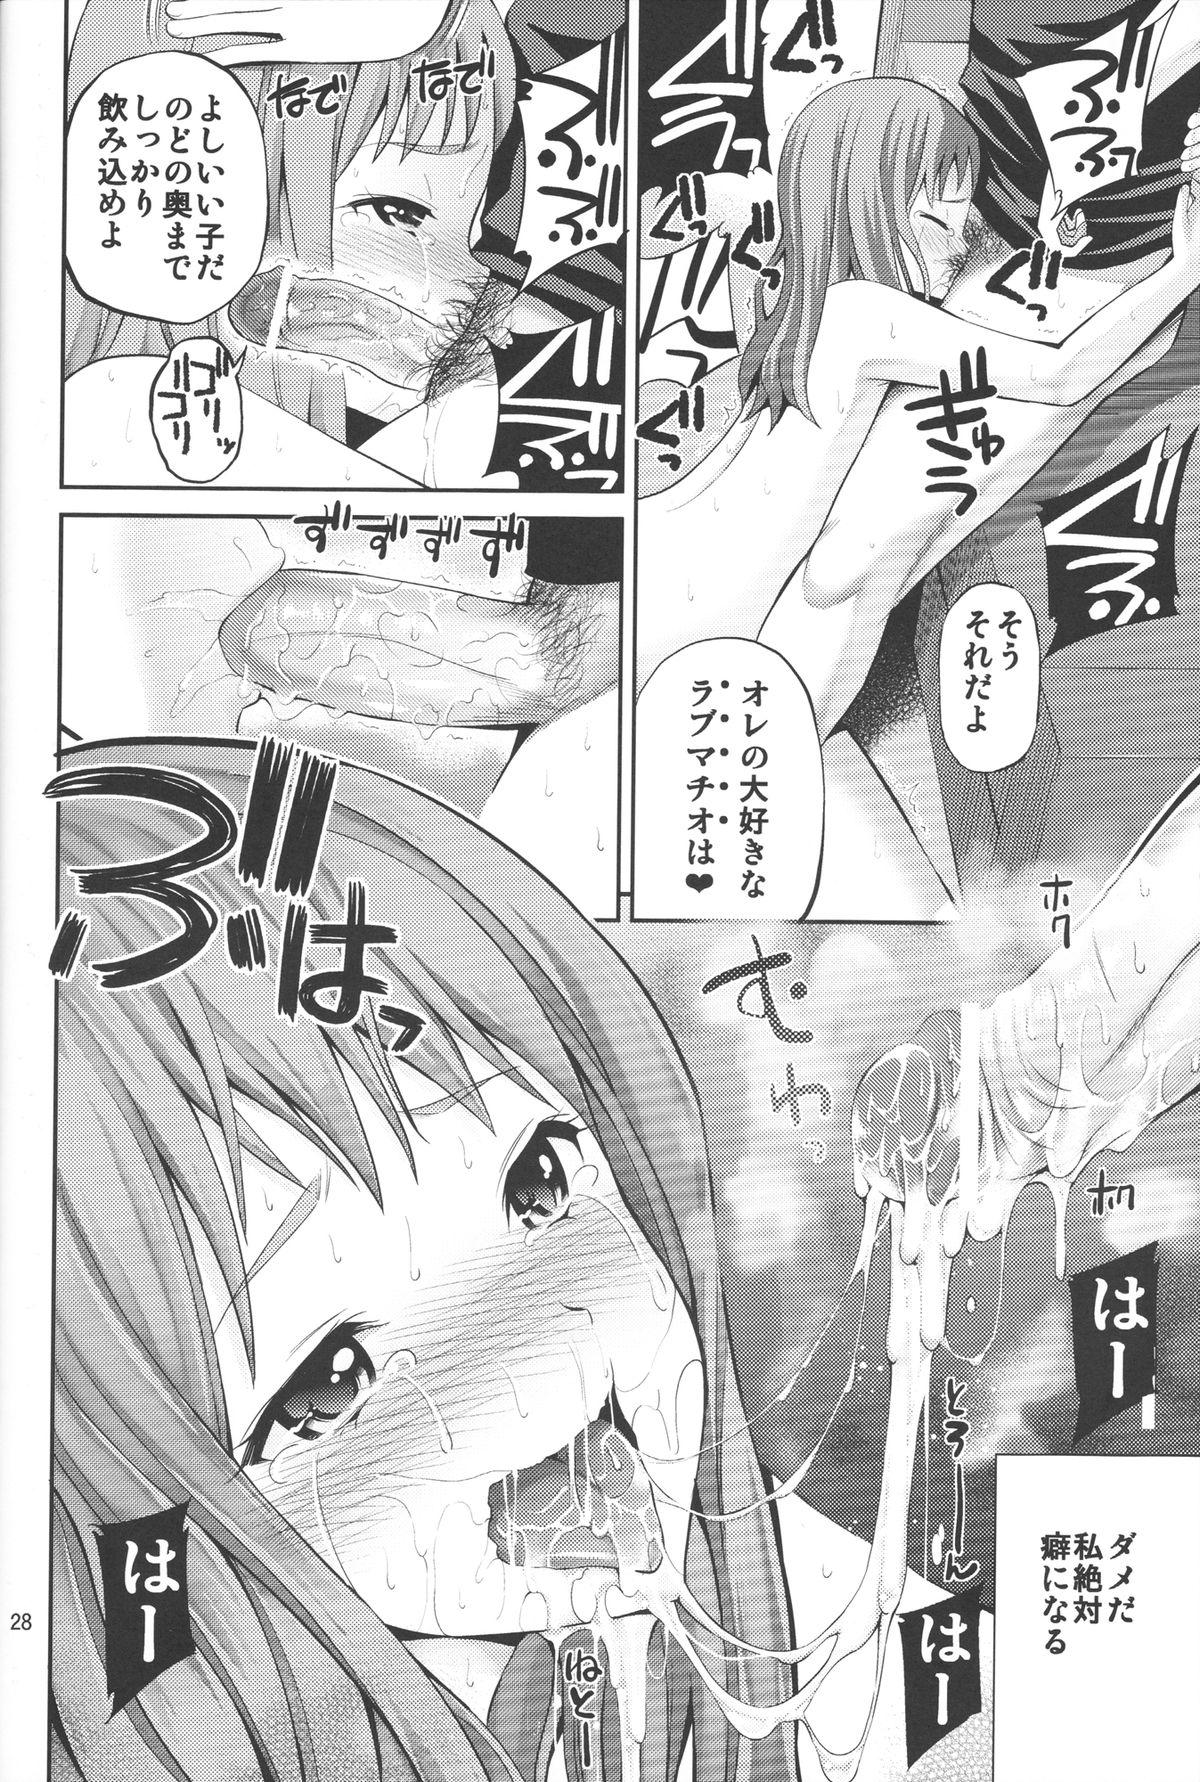 Ano Anaru no Sundome Manga o Bokutachi wa Mada Shiranai. 26